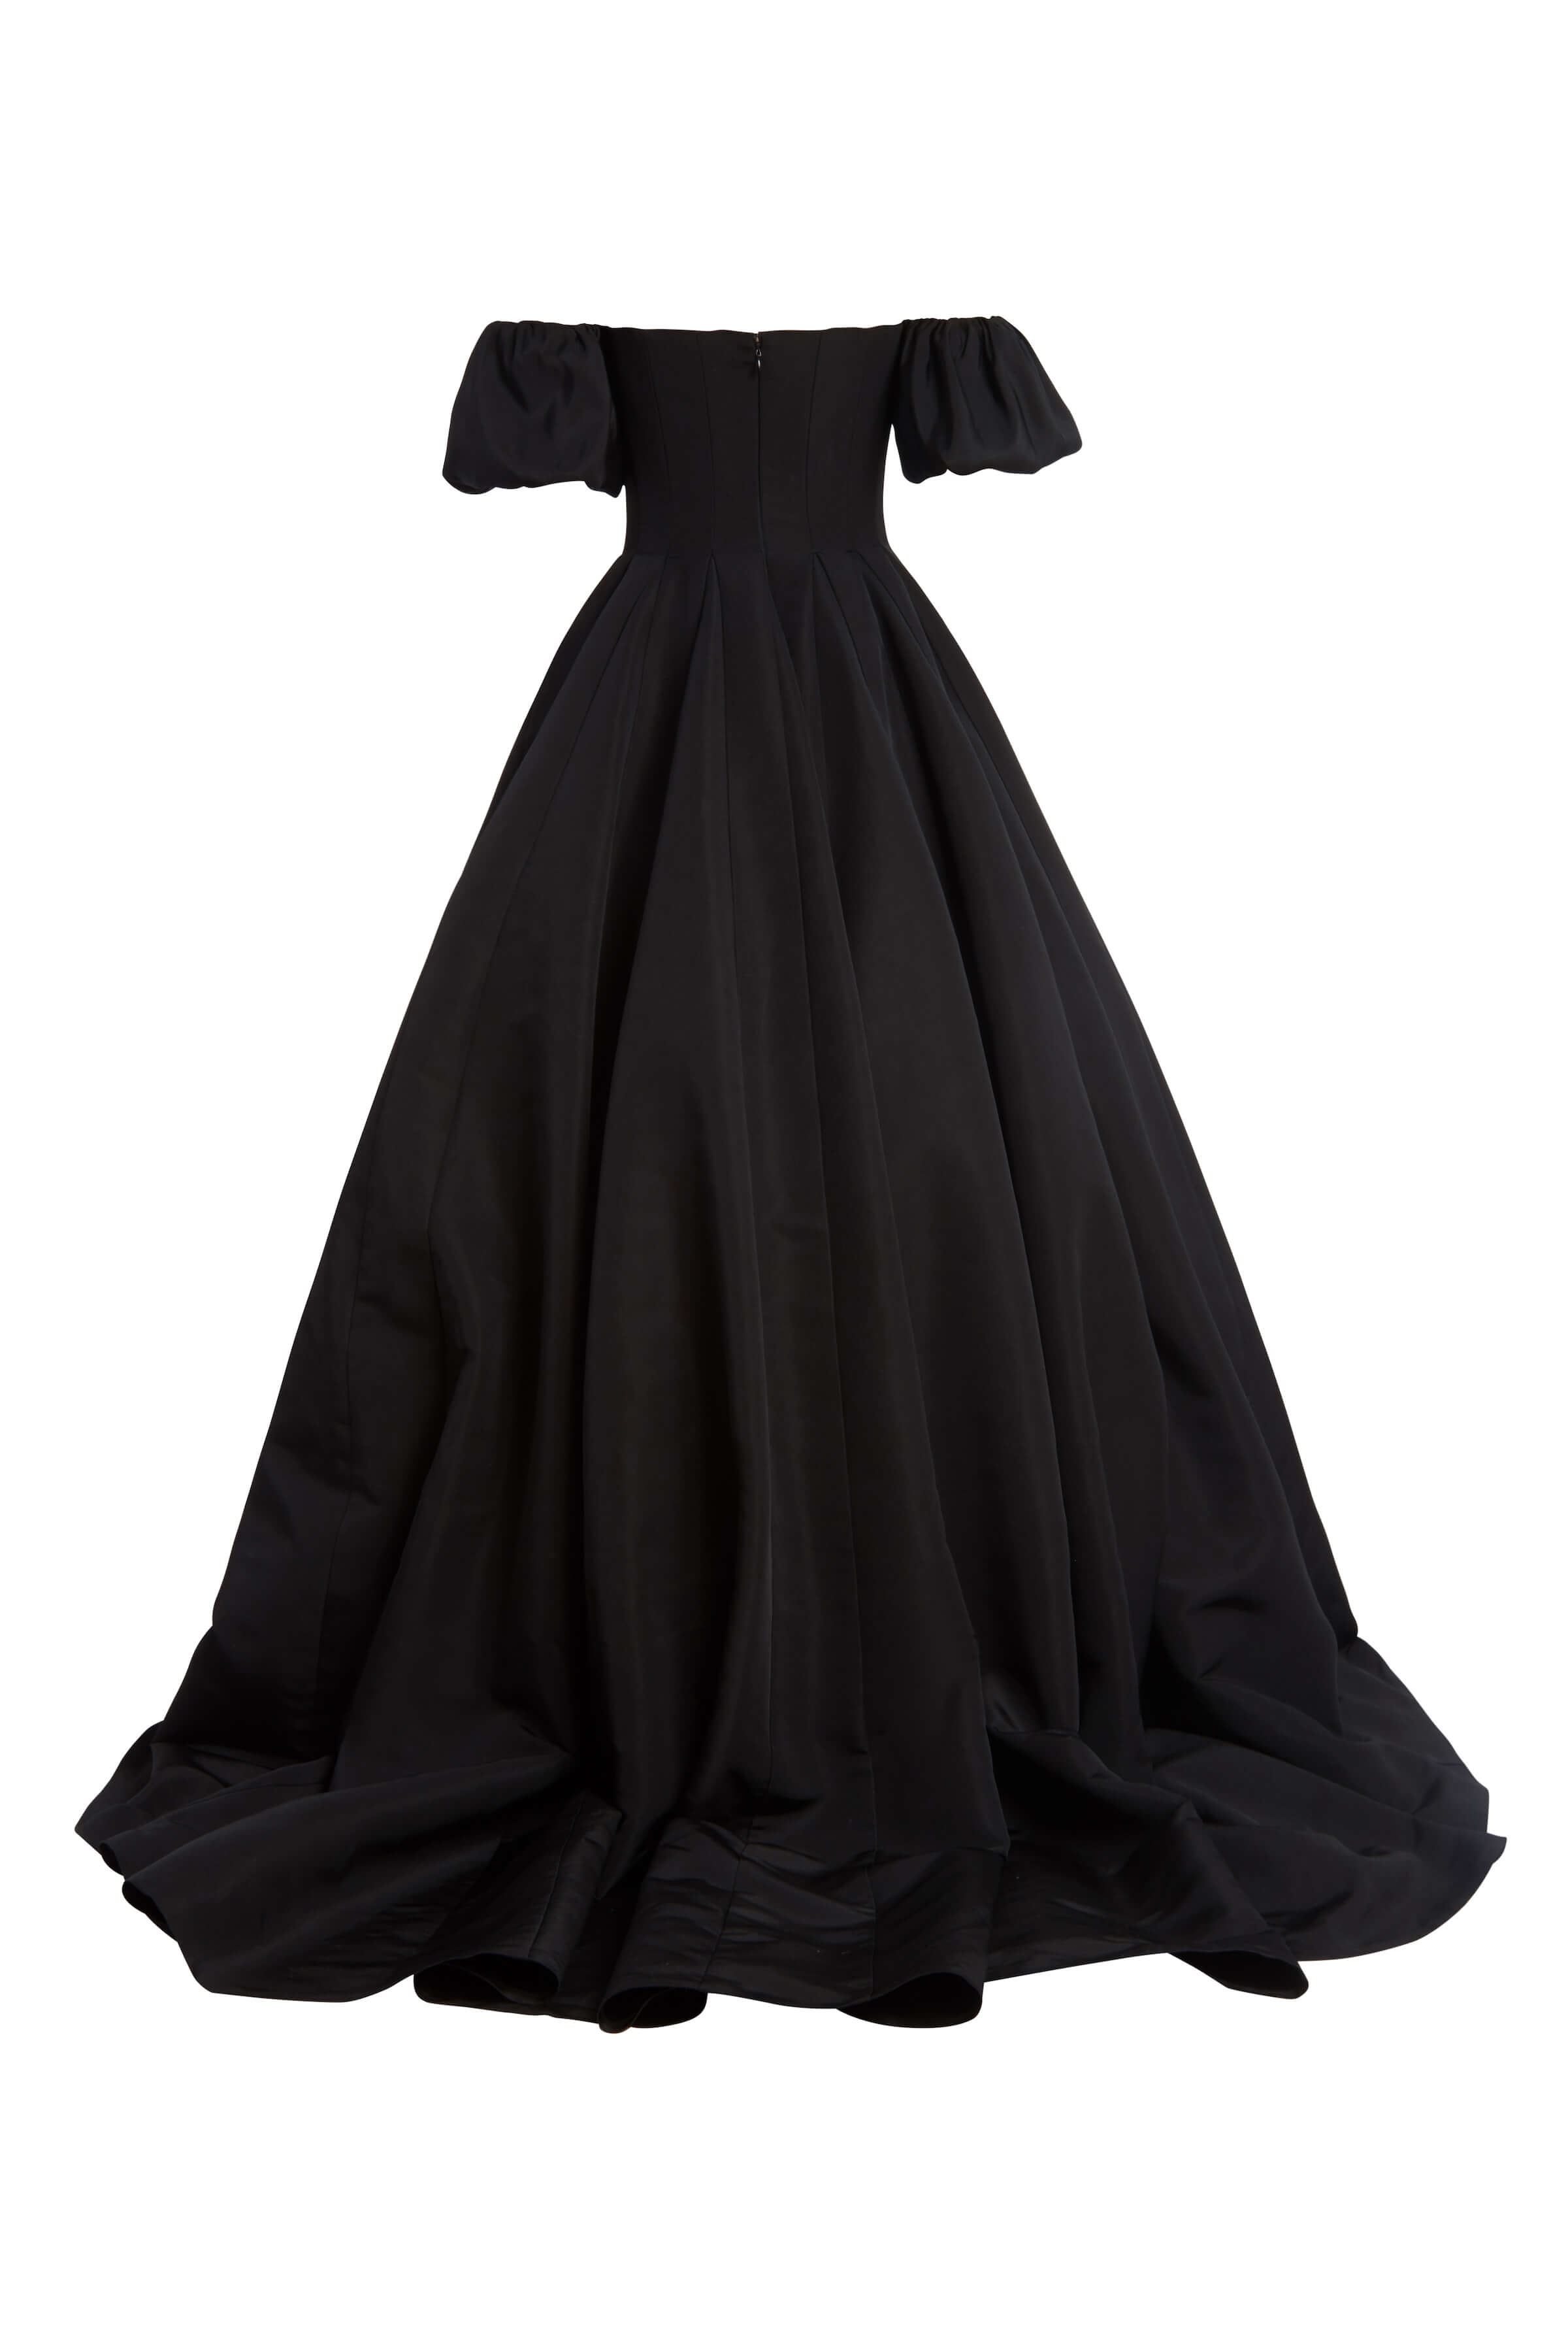 Thalia Black Silk Faille Gown